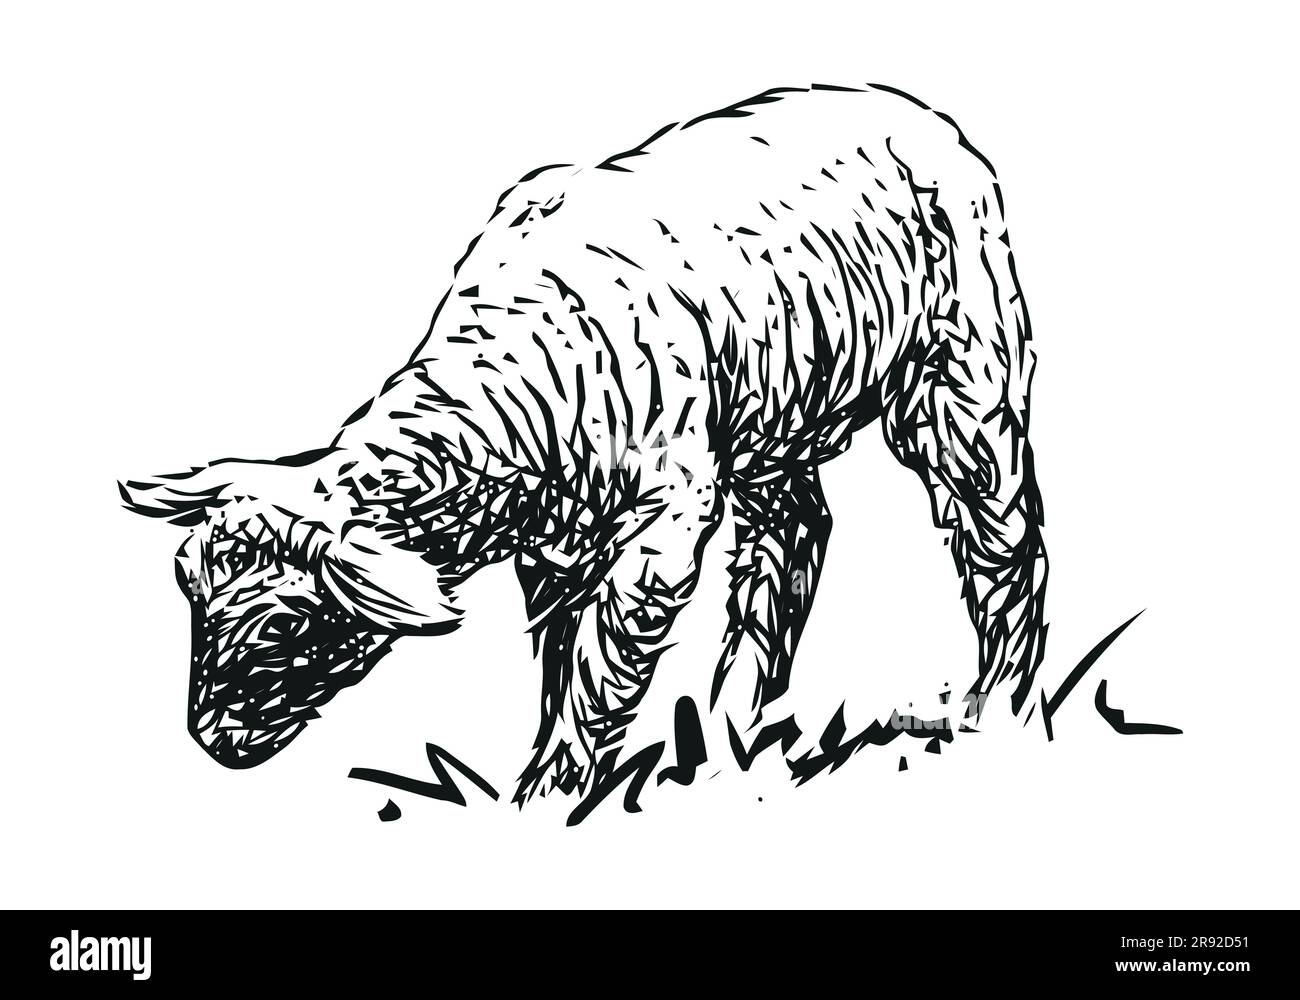 Lamm – Nutztier, handgezeichnete schwarz-weiße Vektordarstellung, isoliert auf weißem Hintergrund Stock Vektor